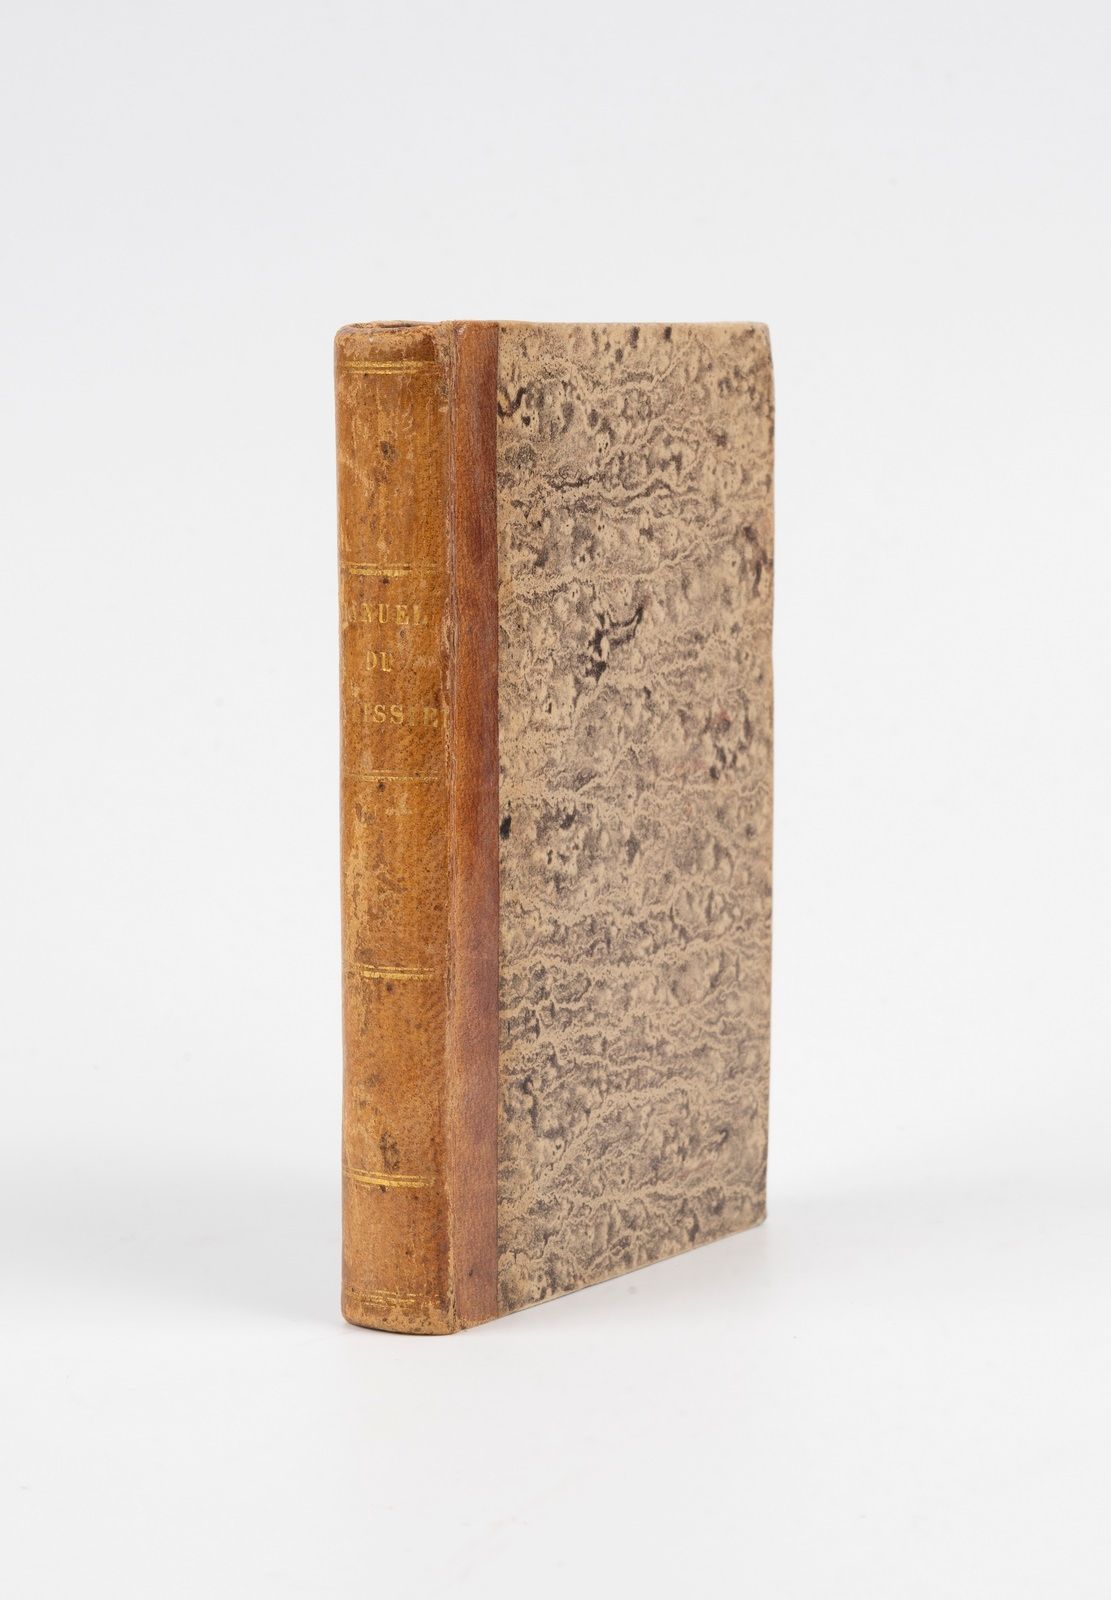 Null 加康-杜弗尔（Mme）。糕点师手册，供城市和乡村使用。巴黎，罗雷特，1825年。12开本，半棕褐色，光滑的书脊（该时期的装订）。

x和288页。

&hellip;